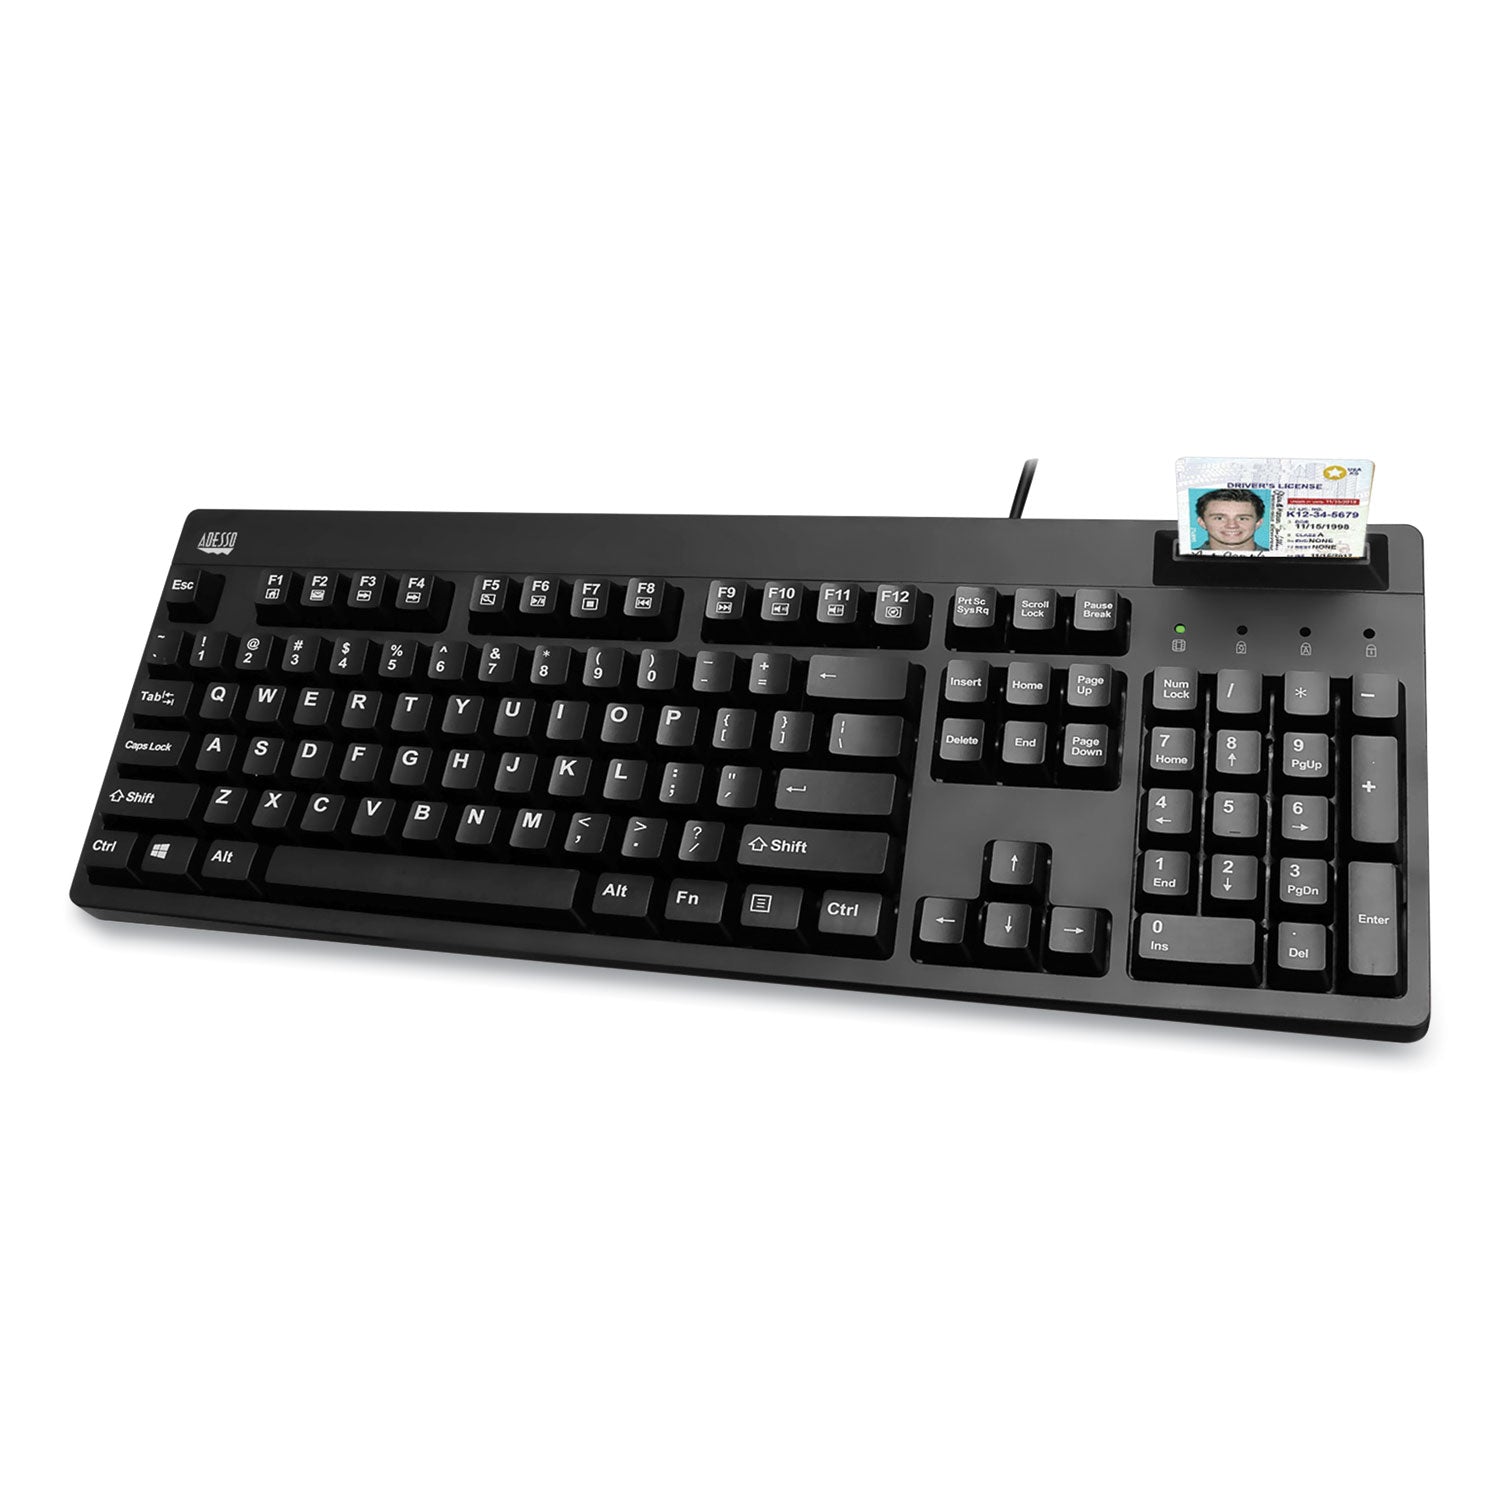 easytouch-smart-card-reader-keyboard-akb-630sb-taa-104-keys-black_adeakb630sbtaa - 2